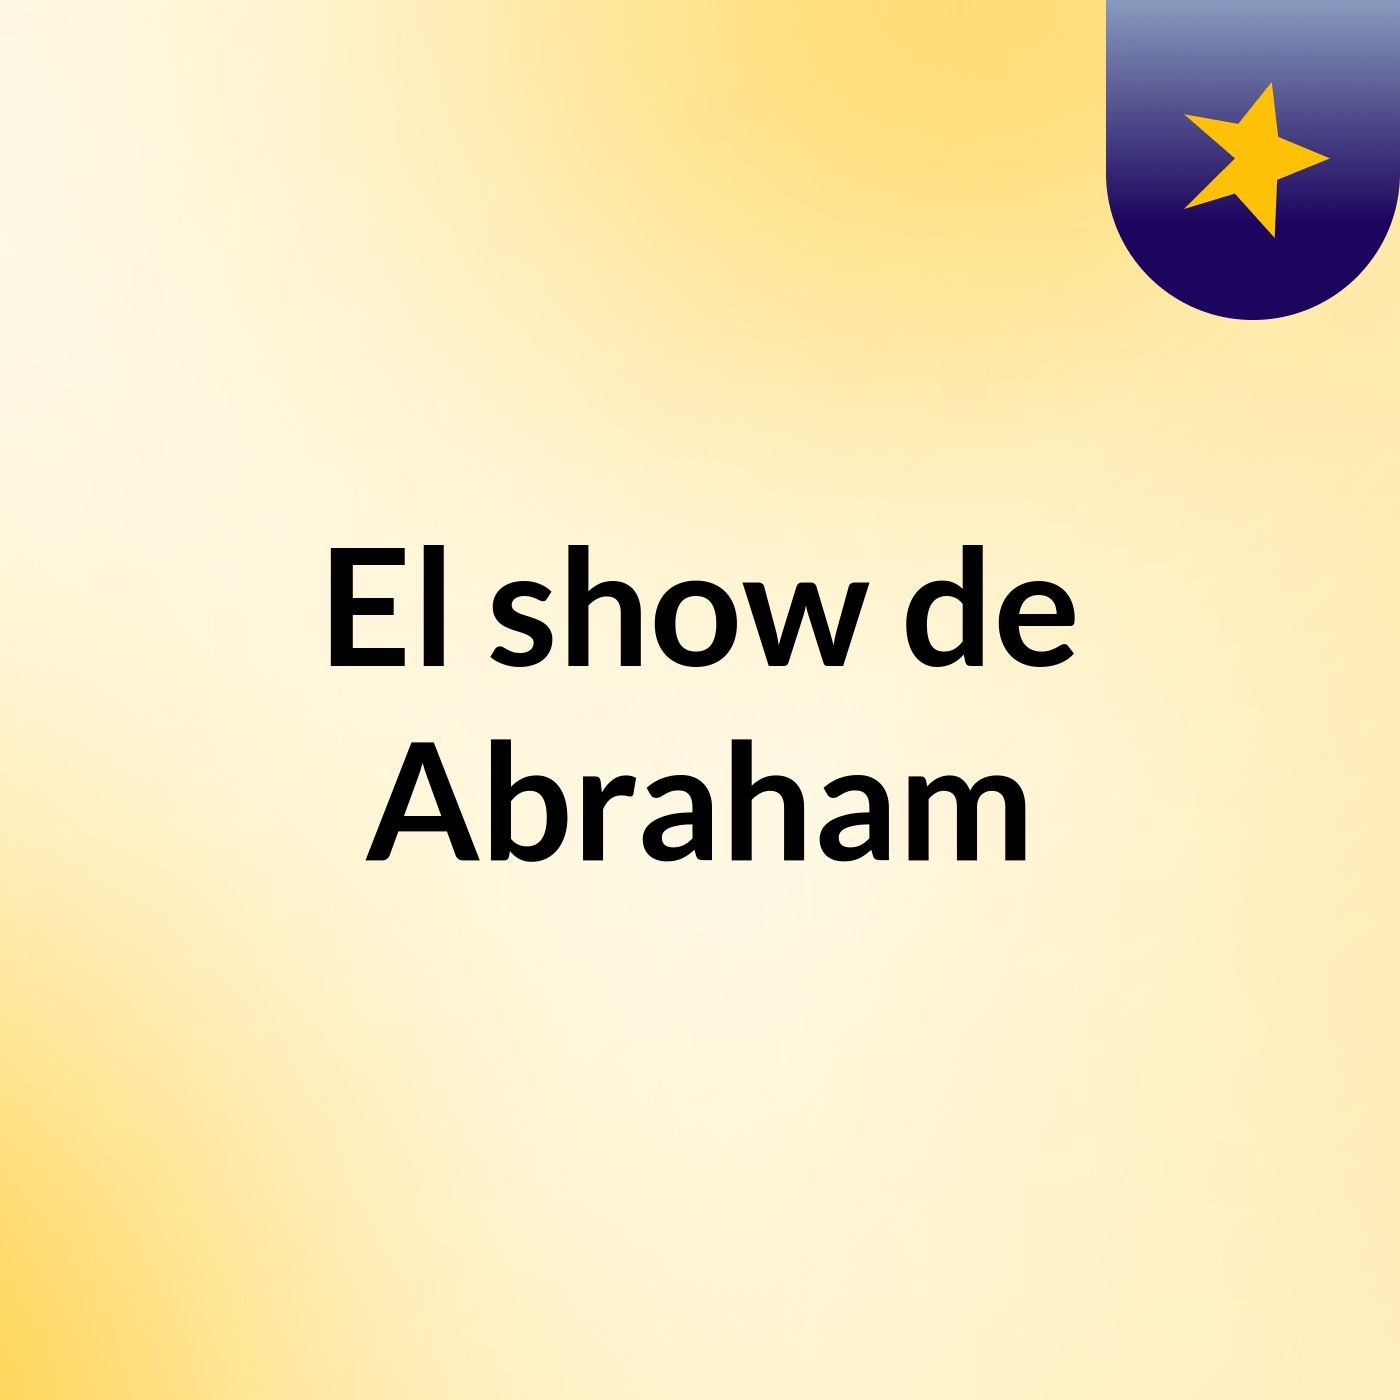 El show de Abraham